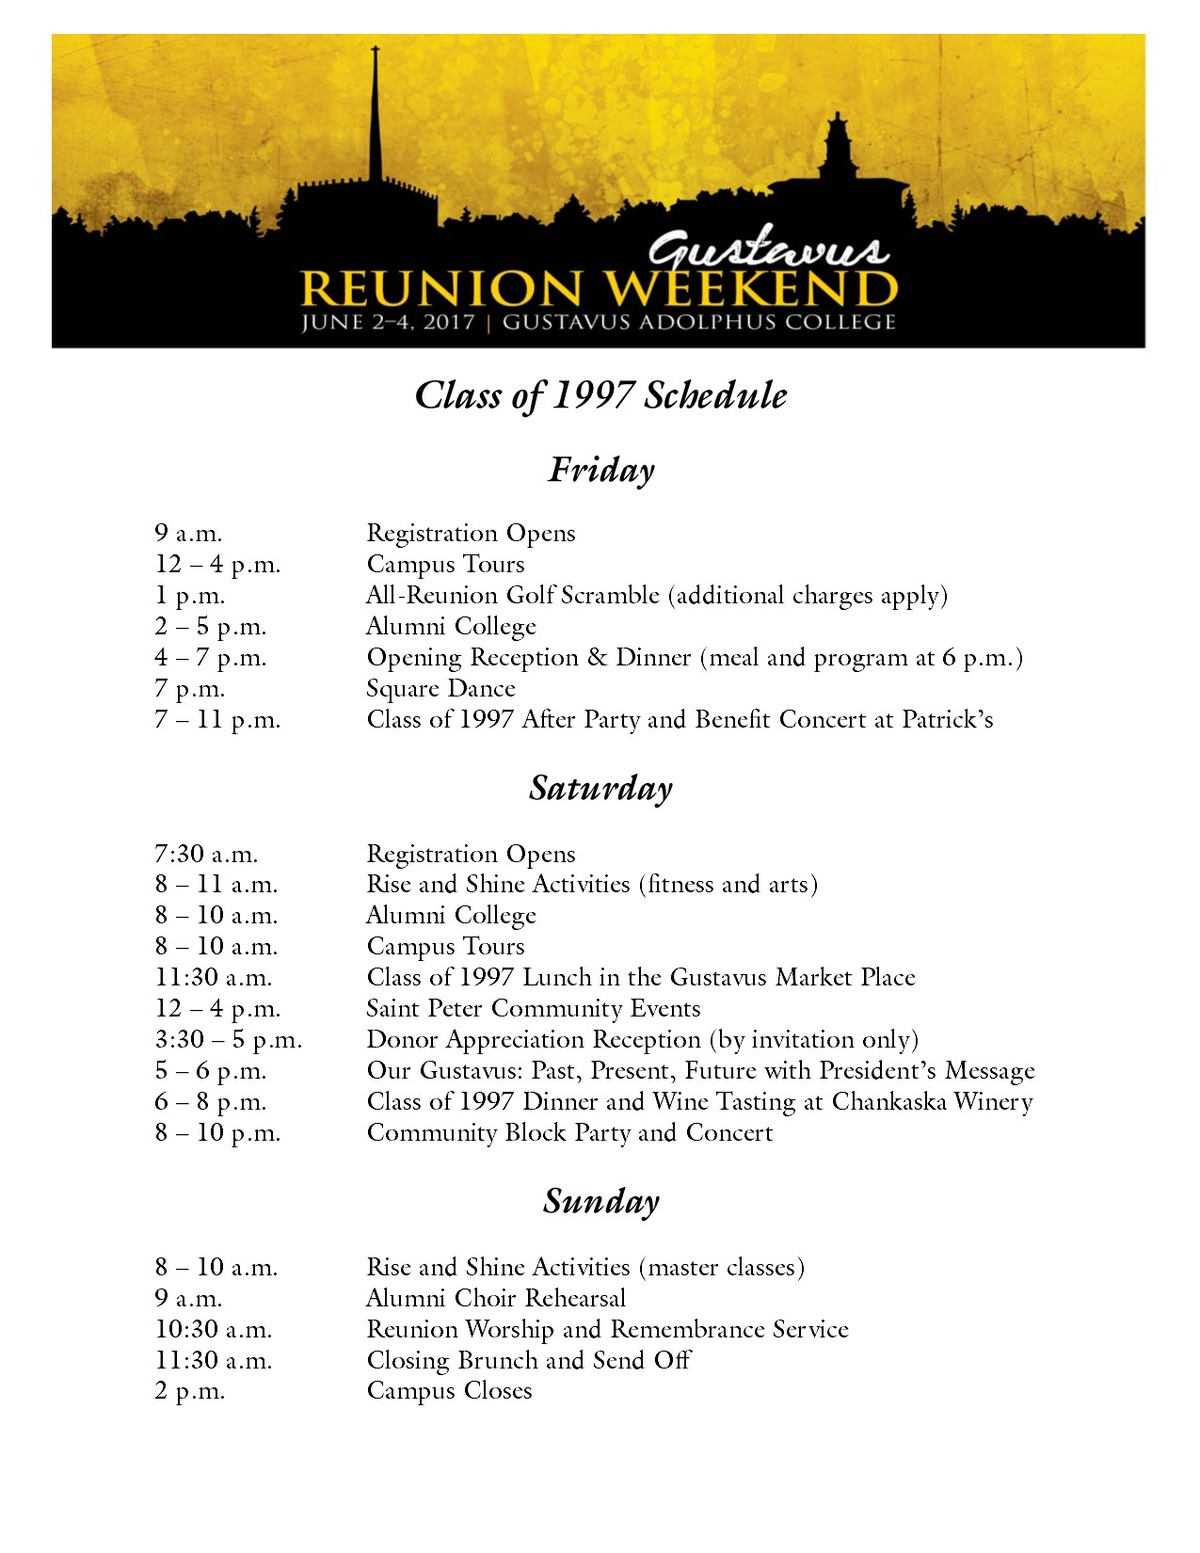 Class of 1997 Reunion Weekend Schedule